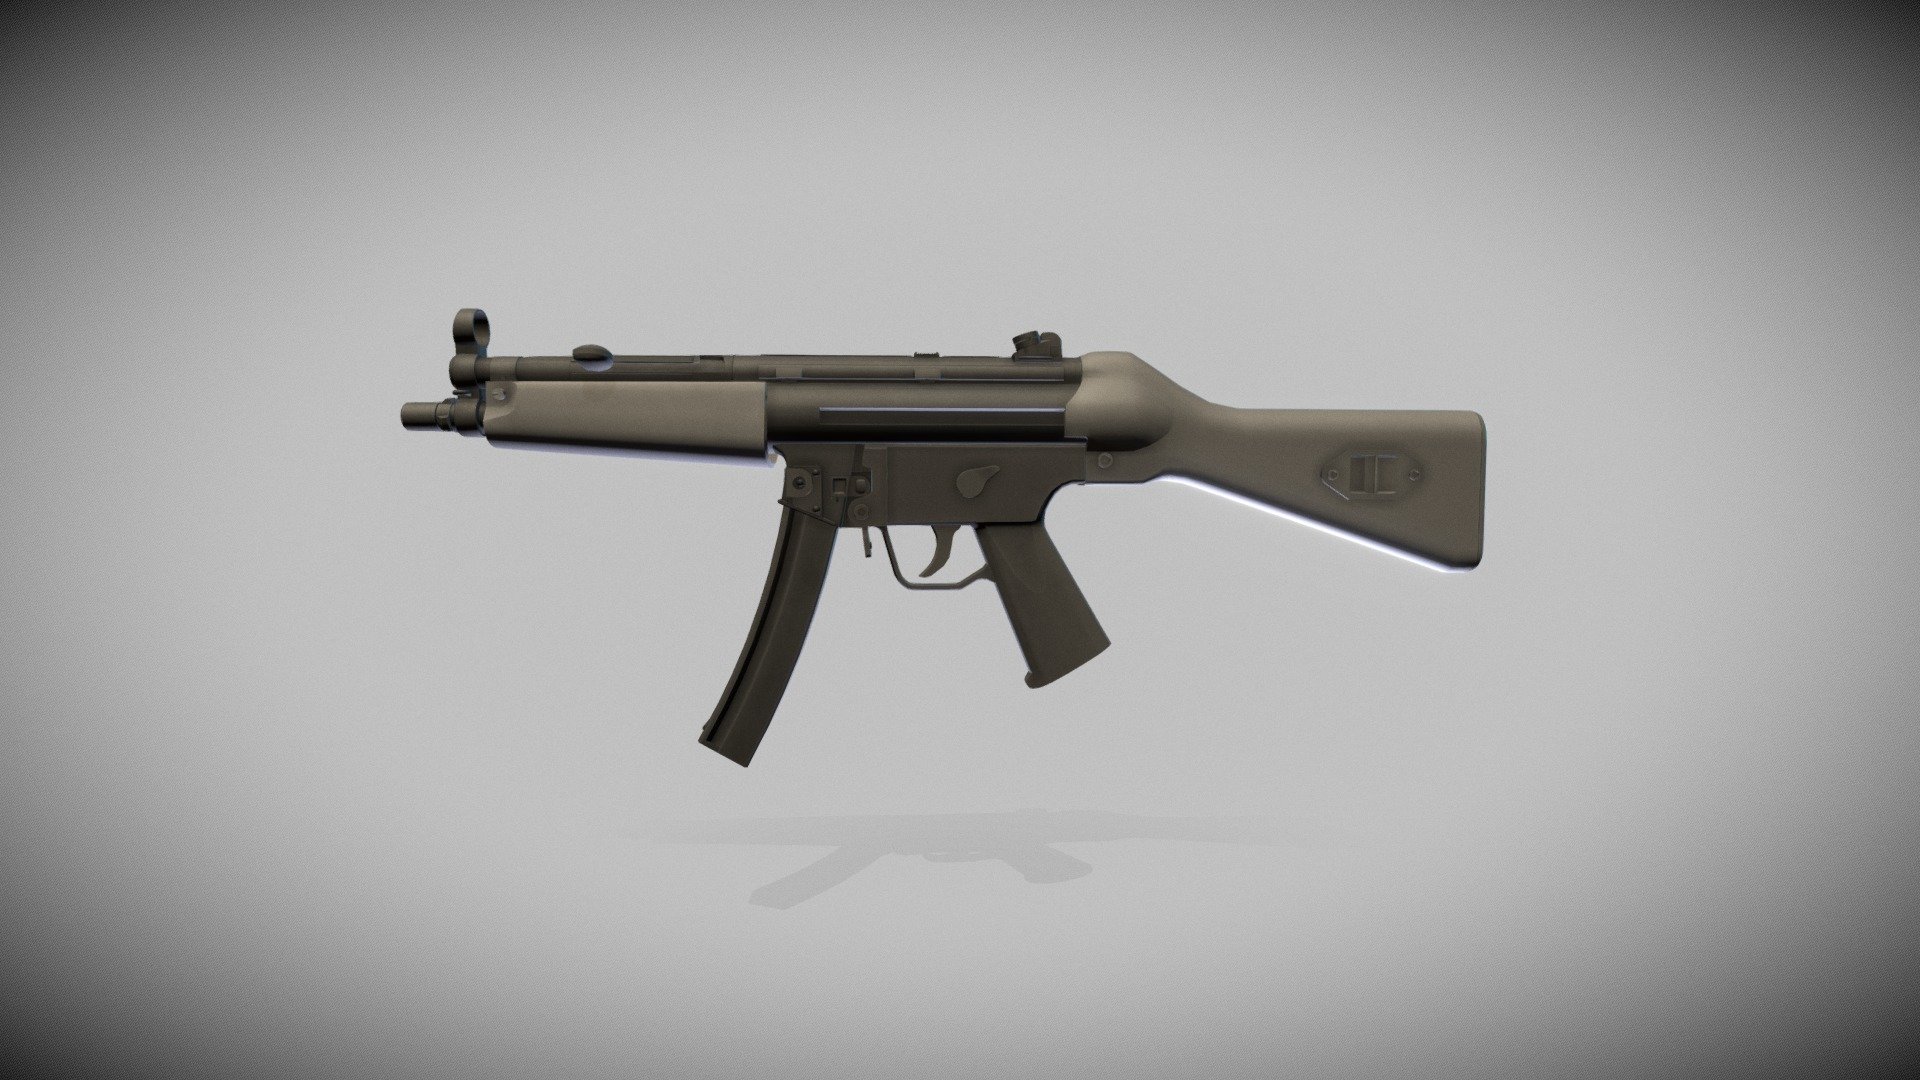 MP5 Submachine gun